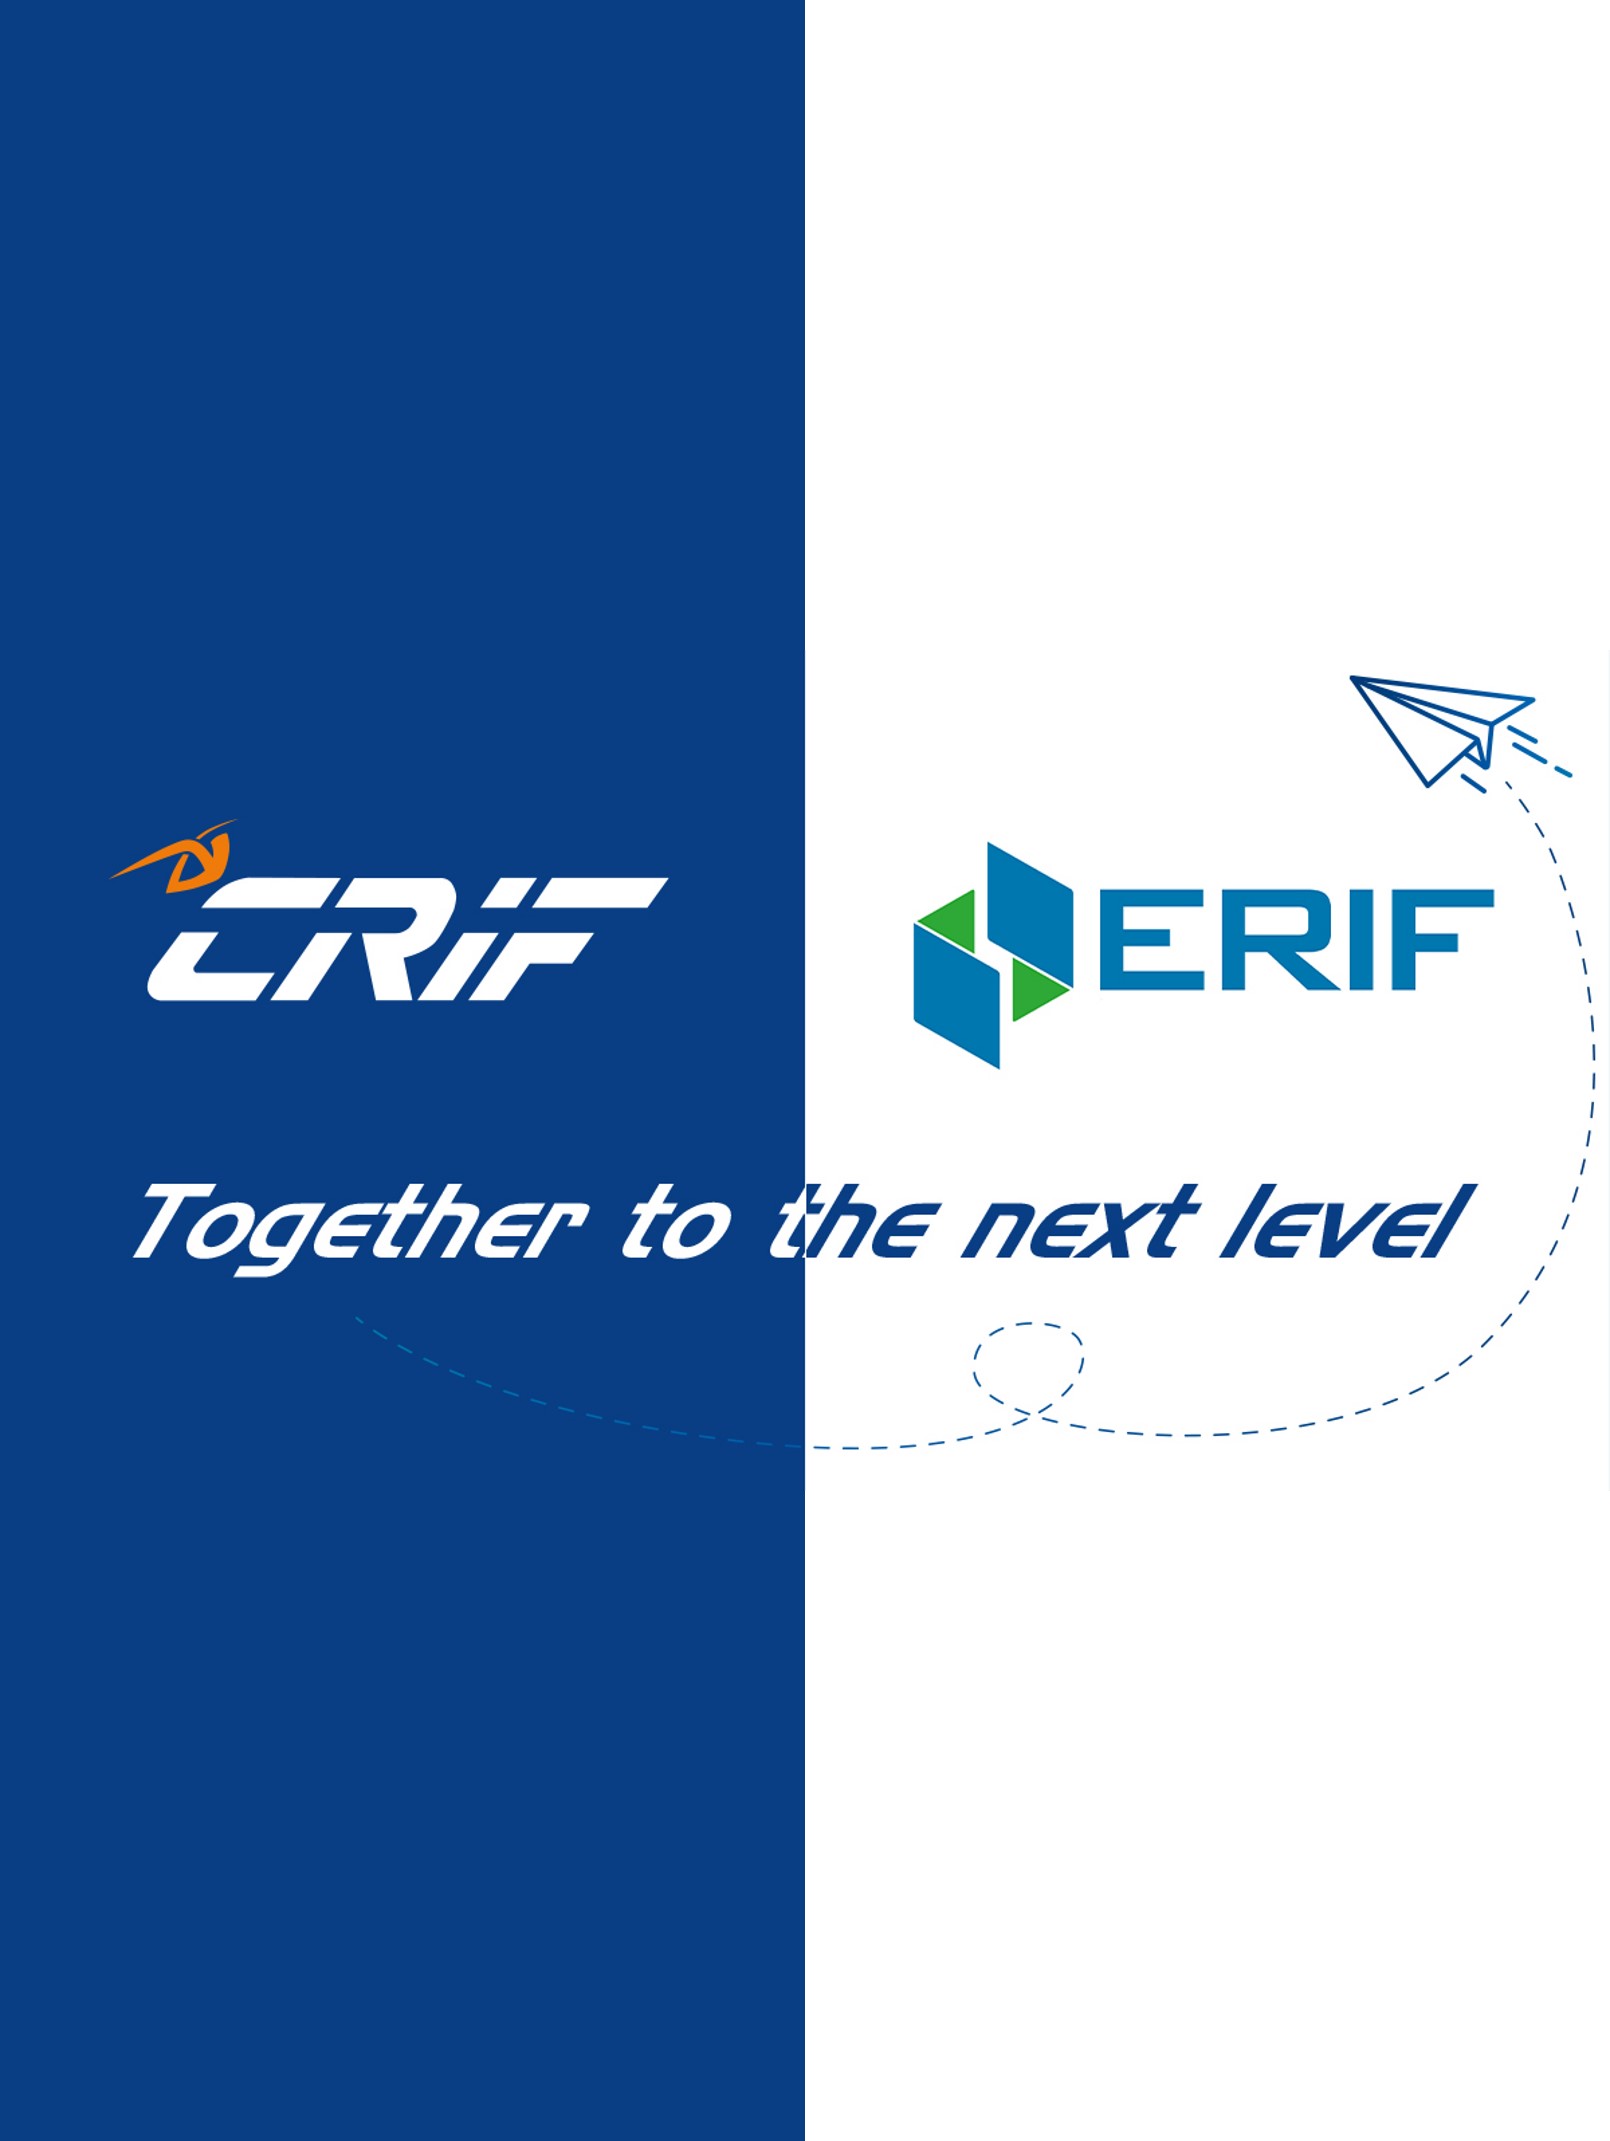 Konsolidacja CRIF&ERIF Home3